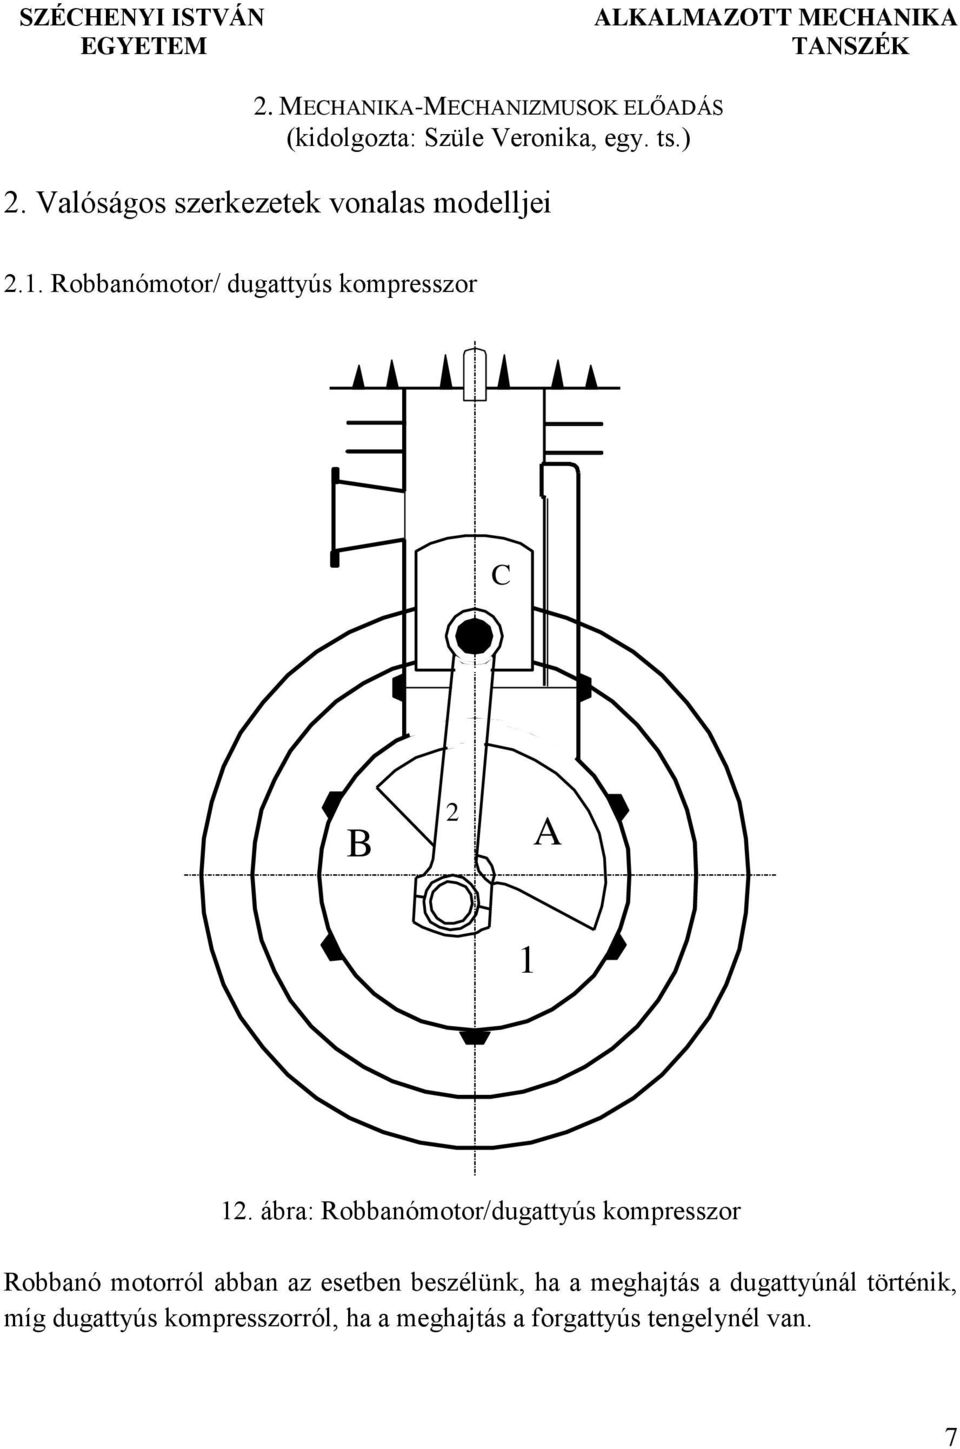 Valóságos szerkezetek vonalas modelljei.. Robbanómotor/ dugattyús kompresszor B.